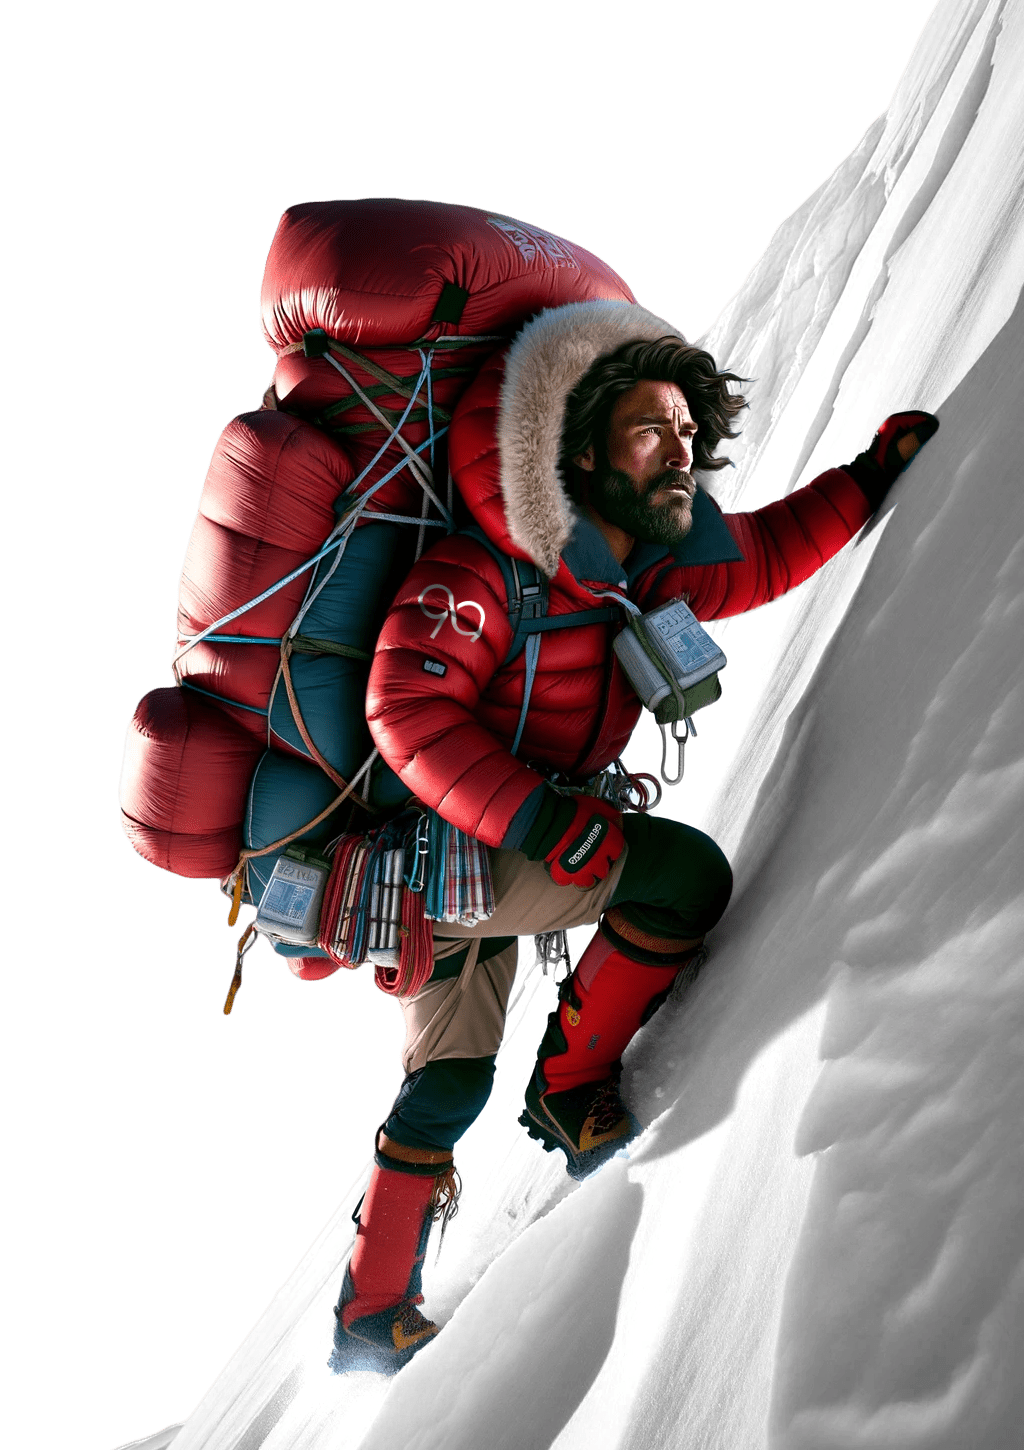 sherpa escalando 2